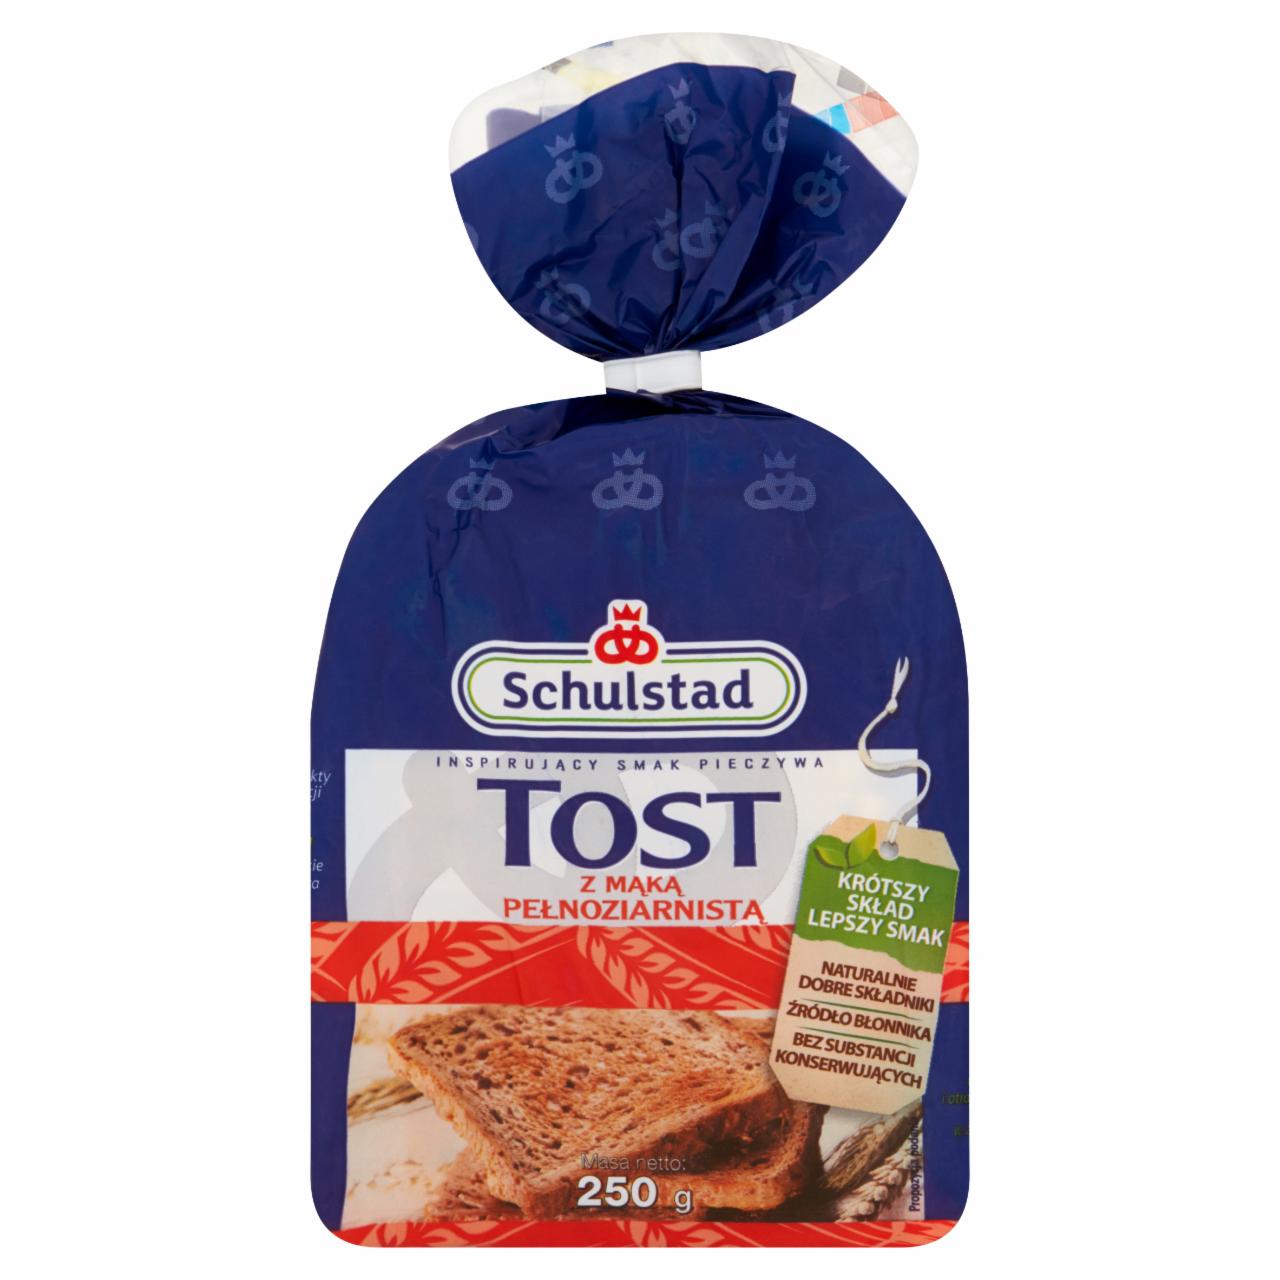 Zdjęcia - Schulstad Tost z mąką pełnoziarnistą Chleb tostowy 250 g